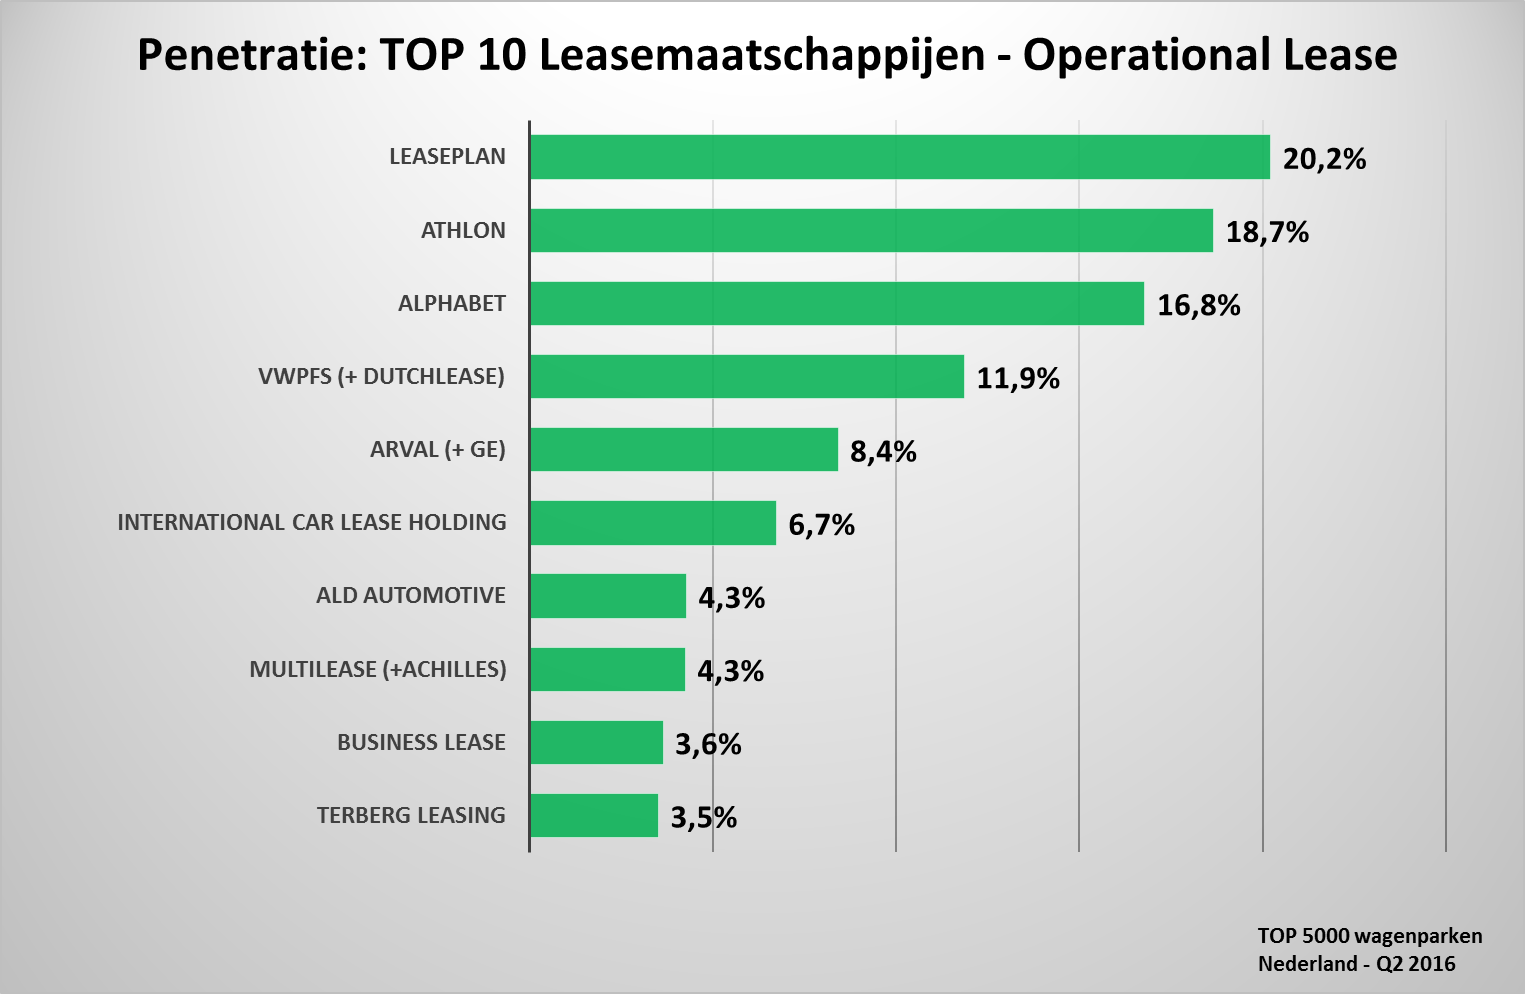 Penetratie leasemaatschappijen (Overall) 